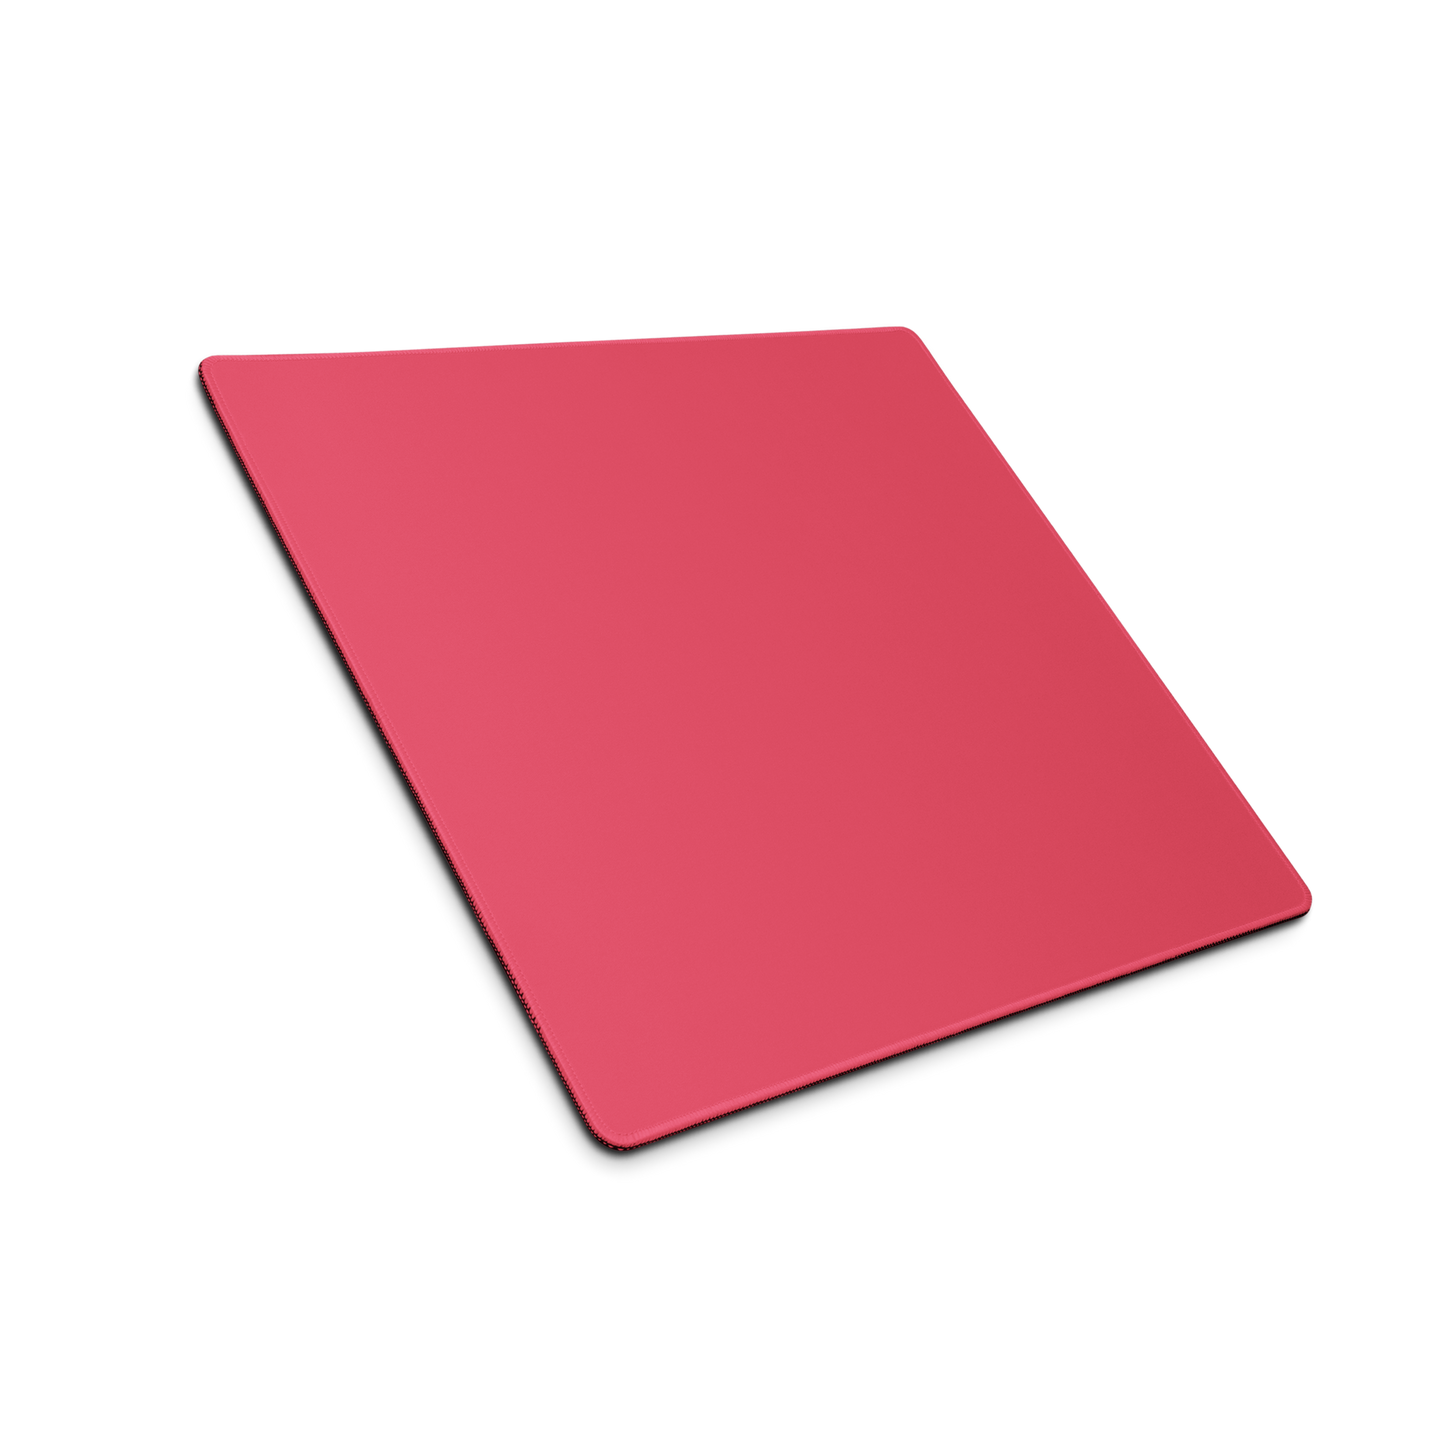 Red Desk Pad -  Pantone 184